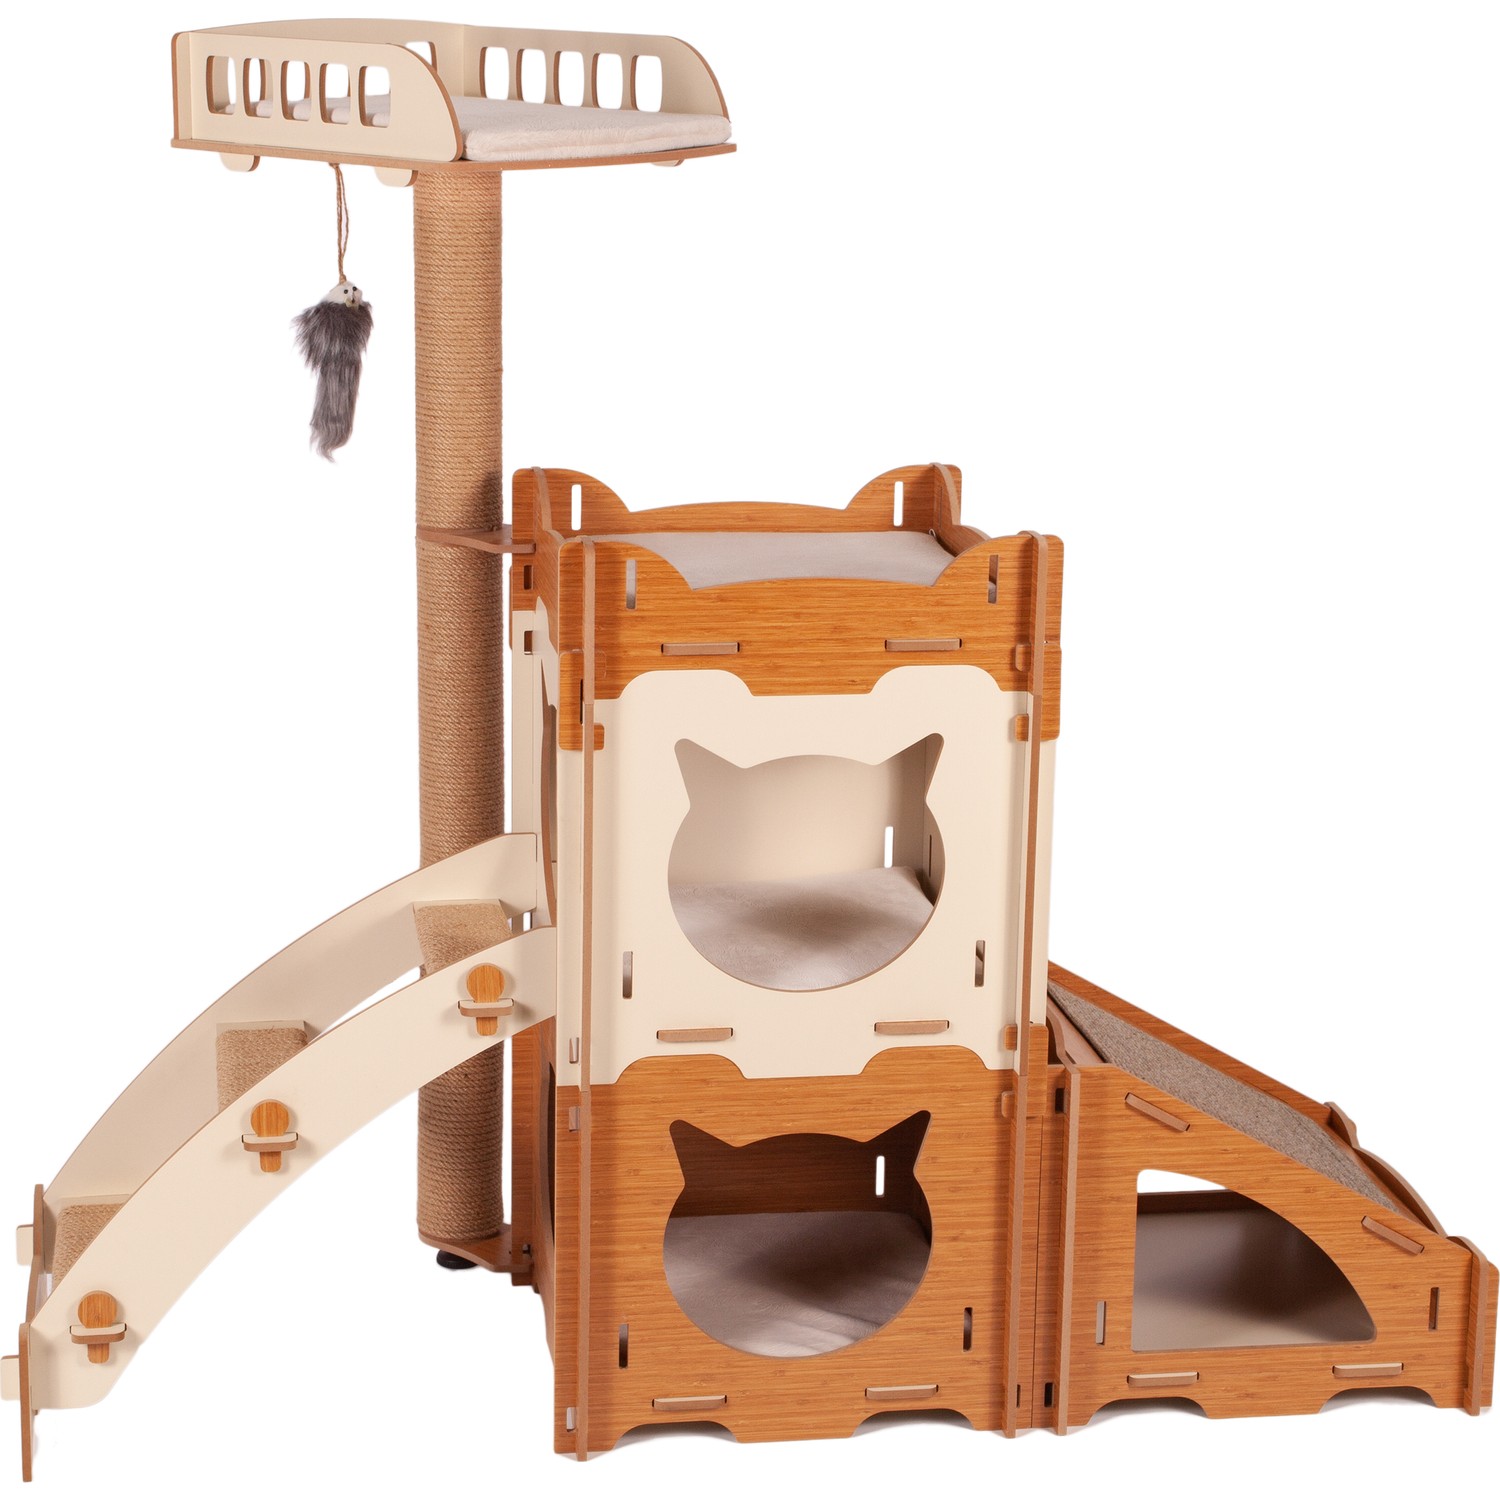 Pati Homes Modüler Kedi Evi Dubleks MerdivenliTırmalama Fiyatı